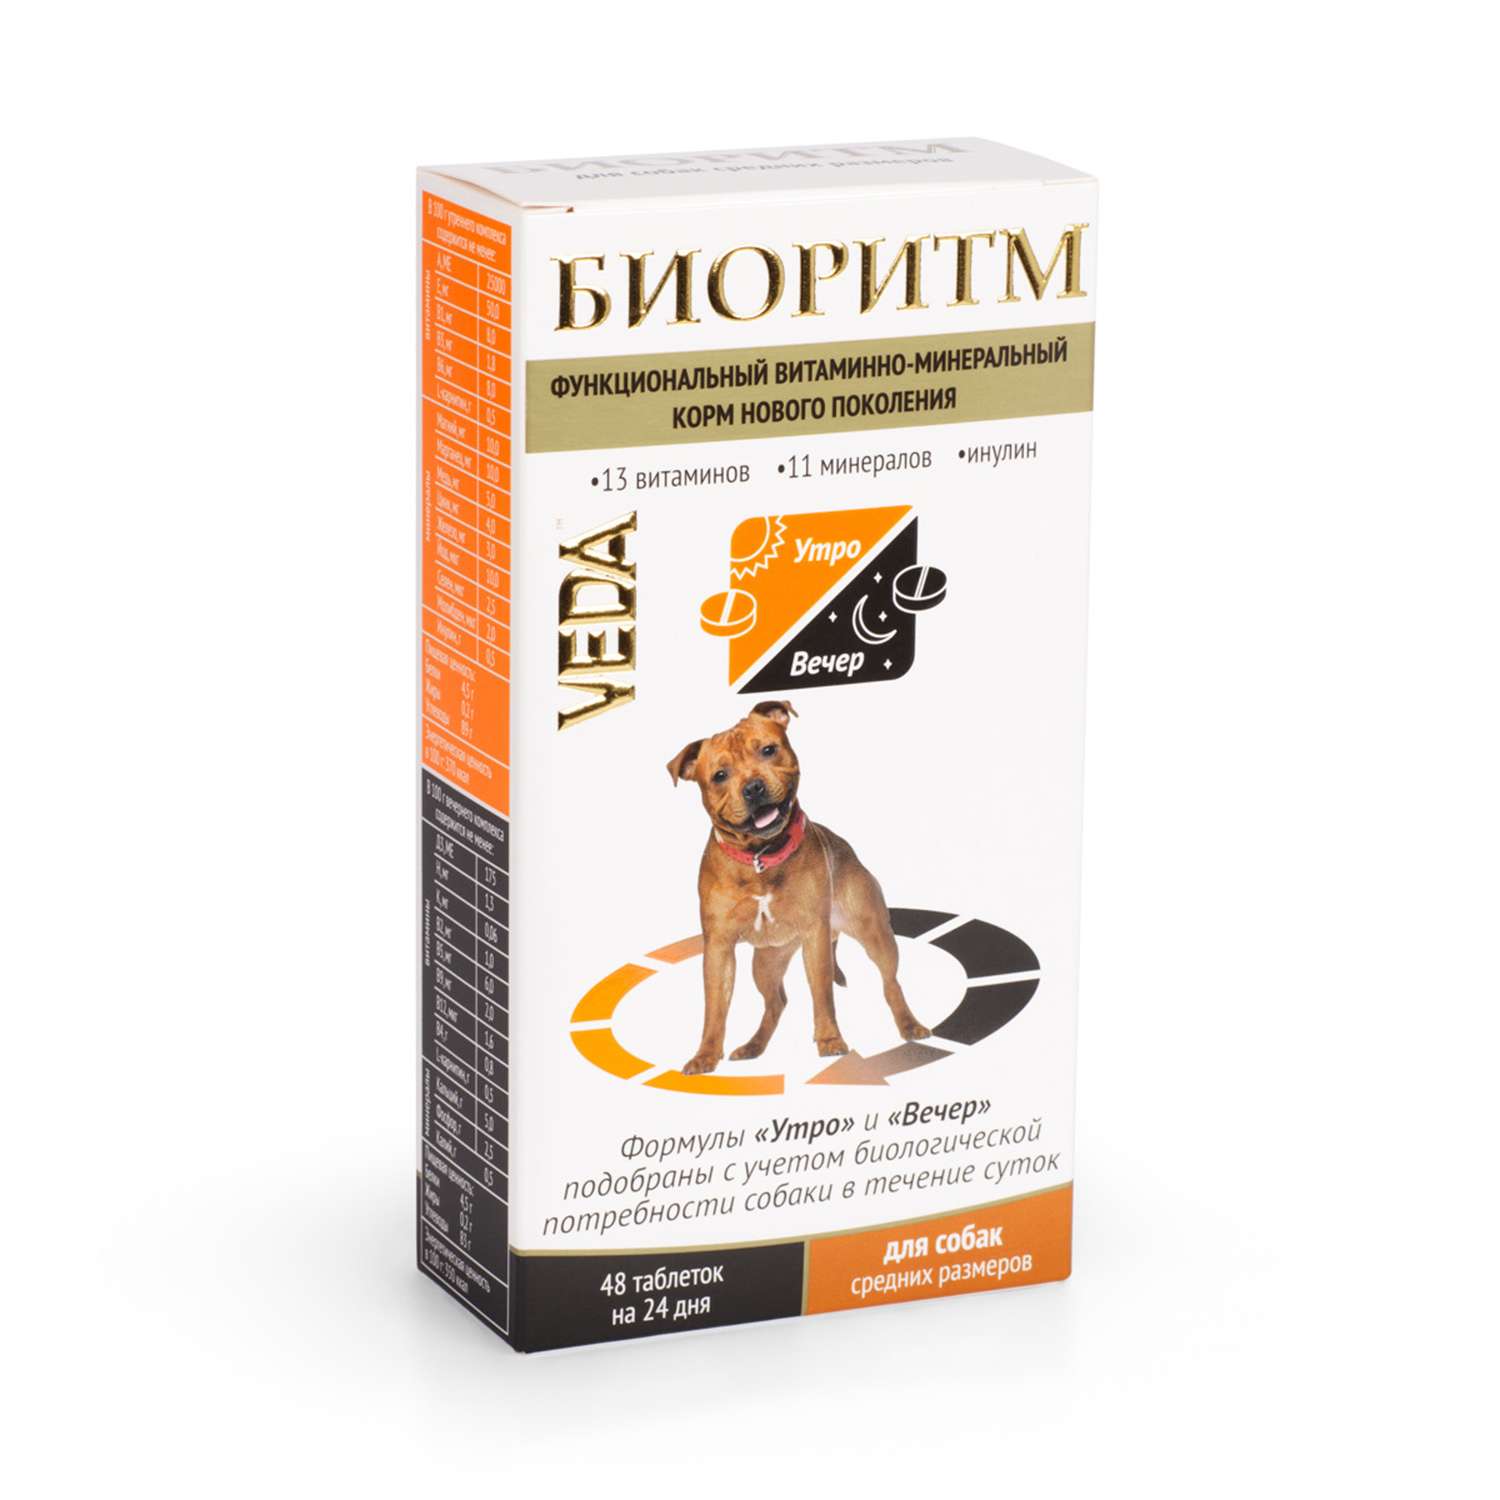 Комплекс для собак Veda Биоритм средних пород витаминно-минеральный 48таблеток - фото 1